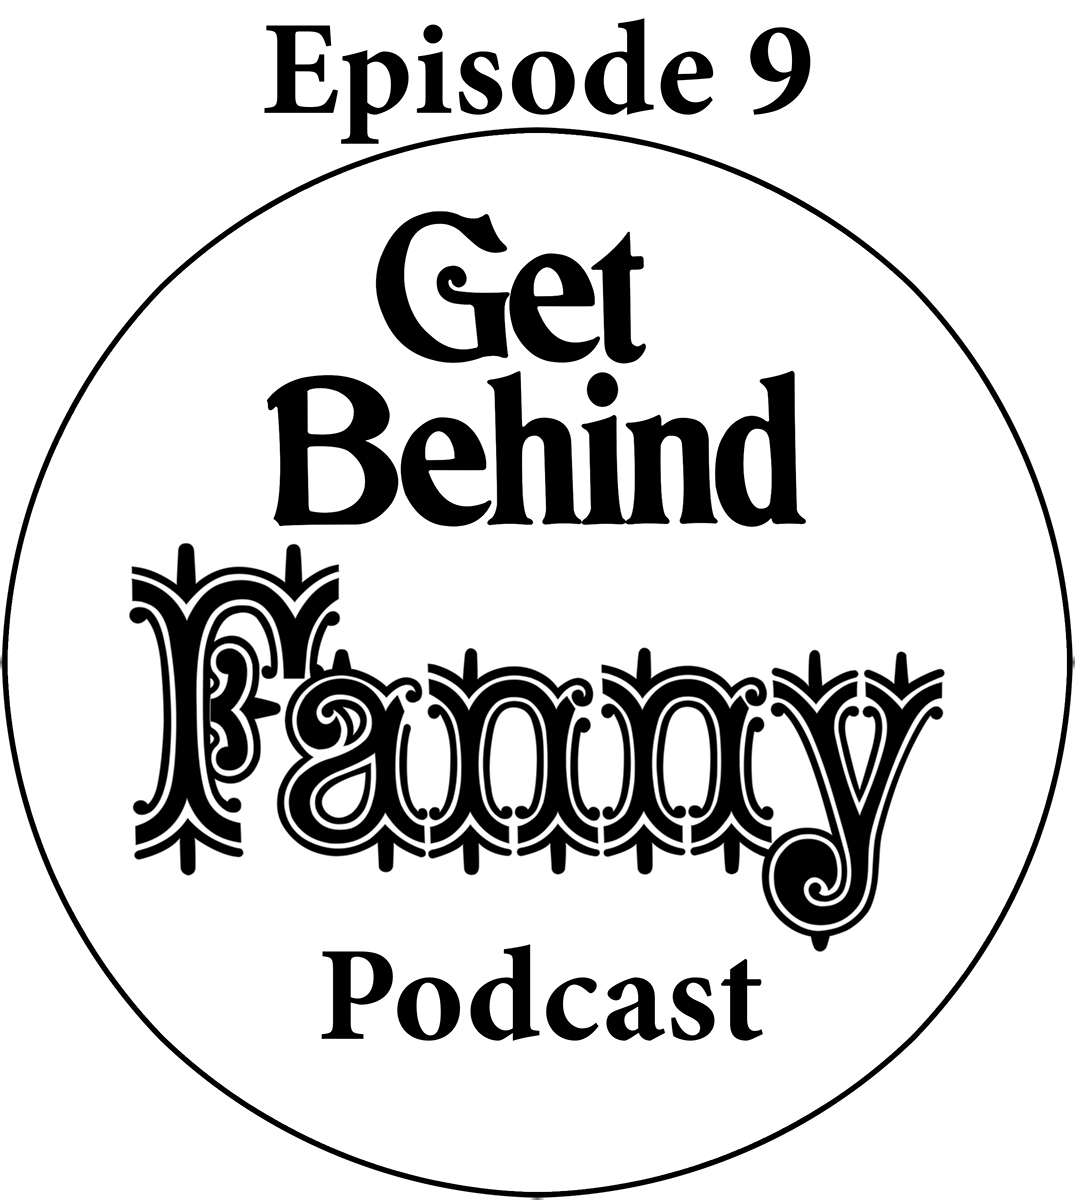 Get Behind Fanny: Episode 9